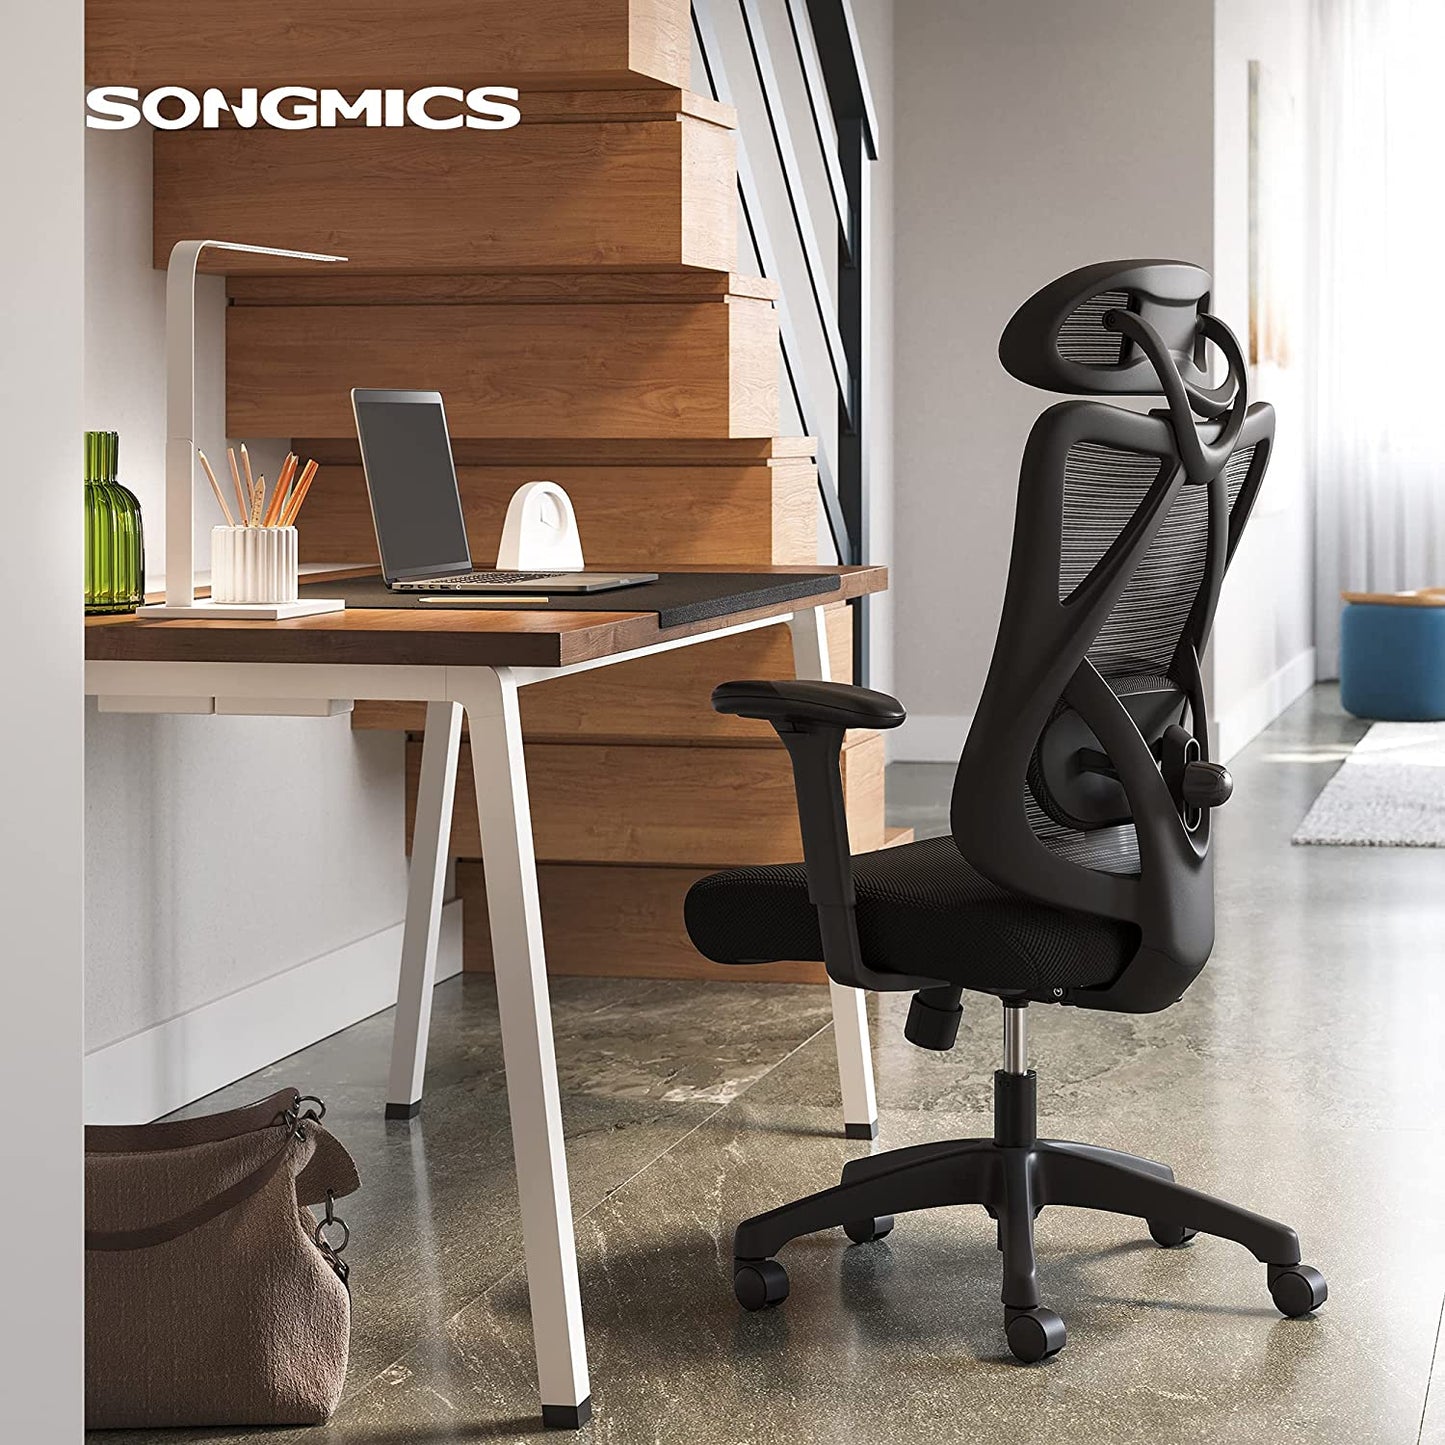  Einen bequemen und robusten Schreibtischstuhl von SONGMICS, damit Sie energetisch und bequem arbeiten oder sich herrlich entspannen können.